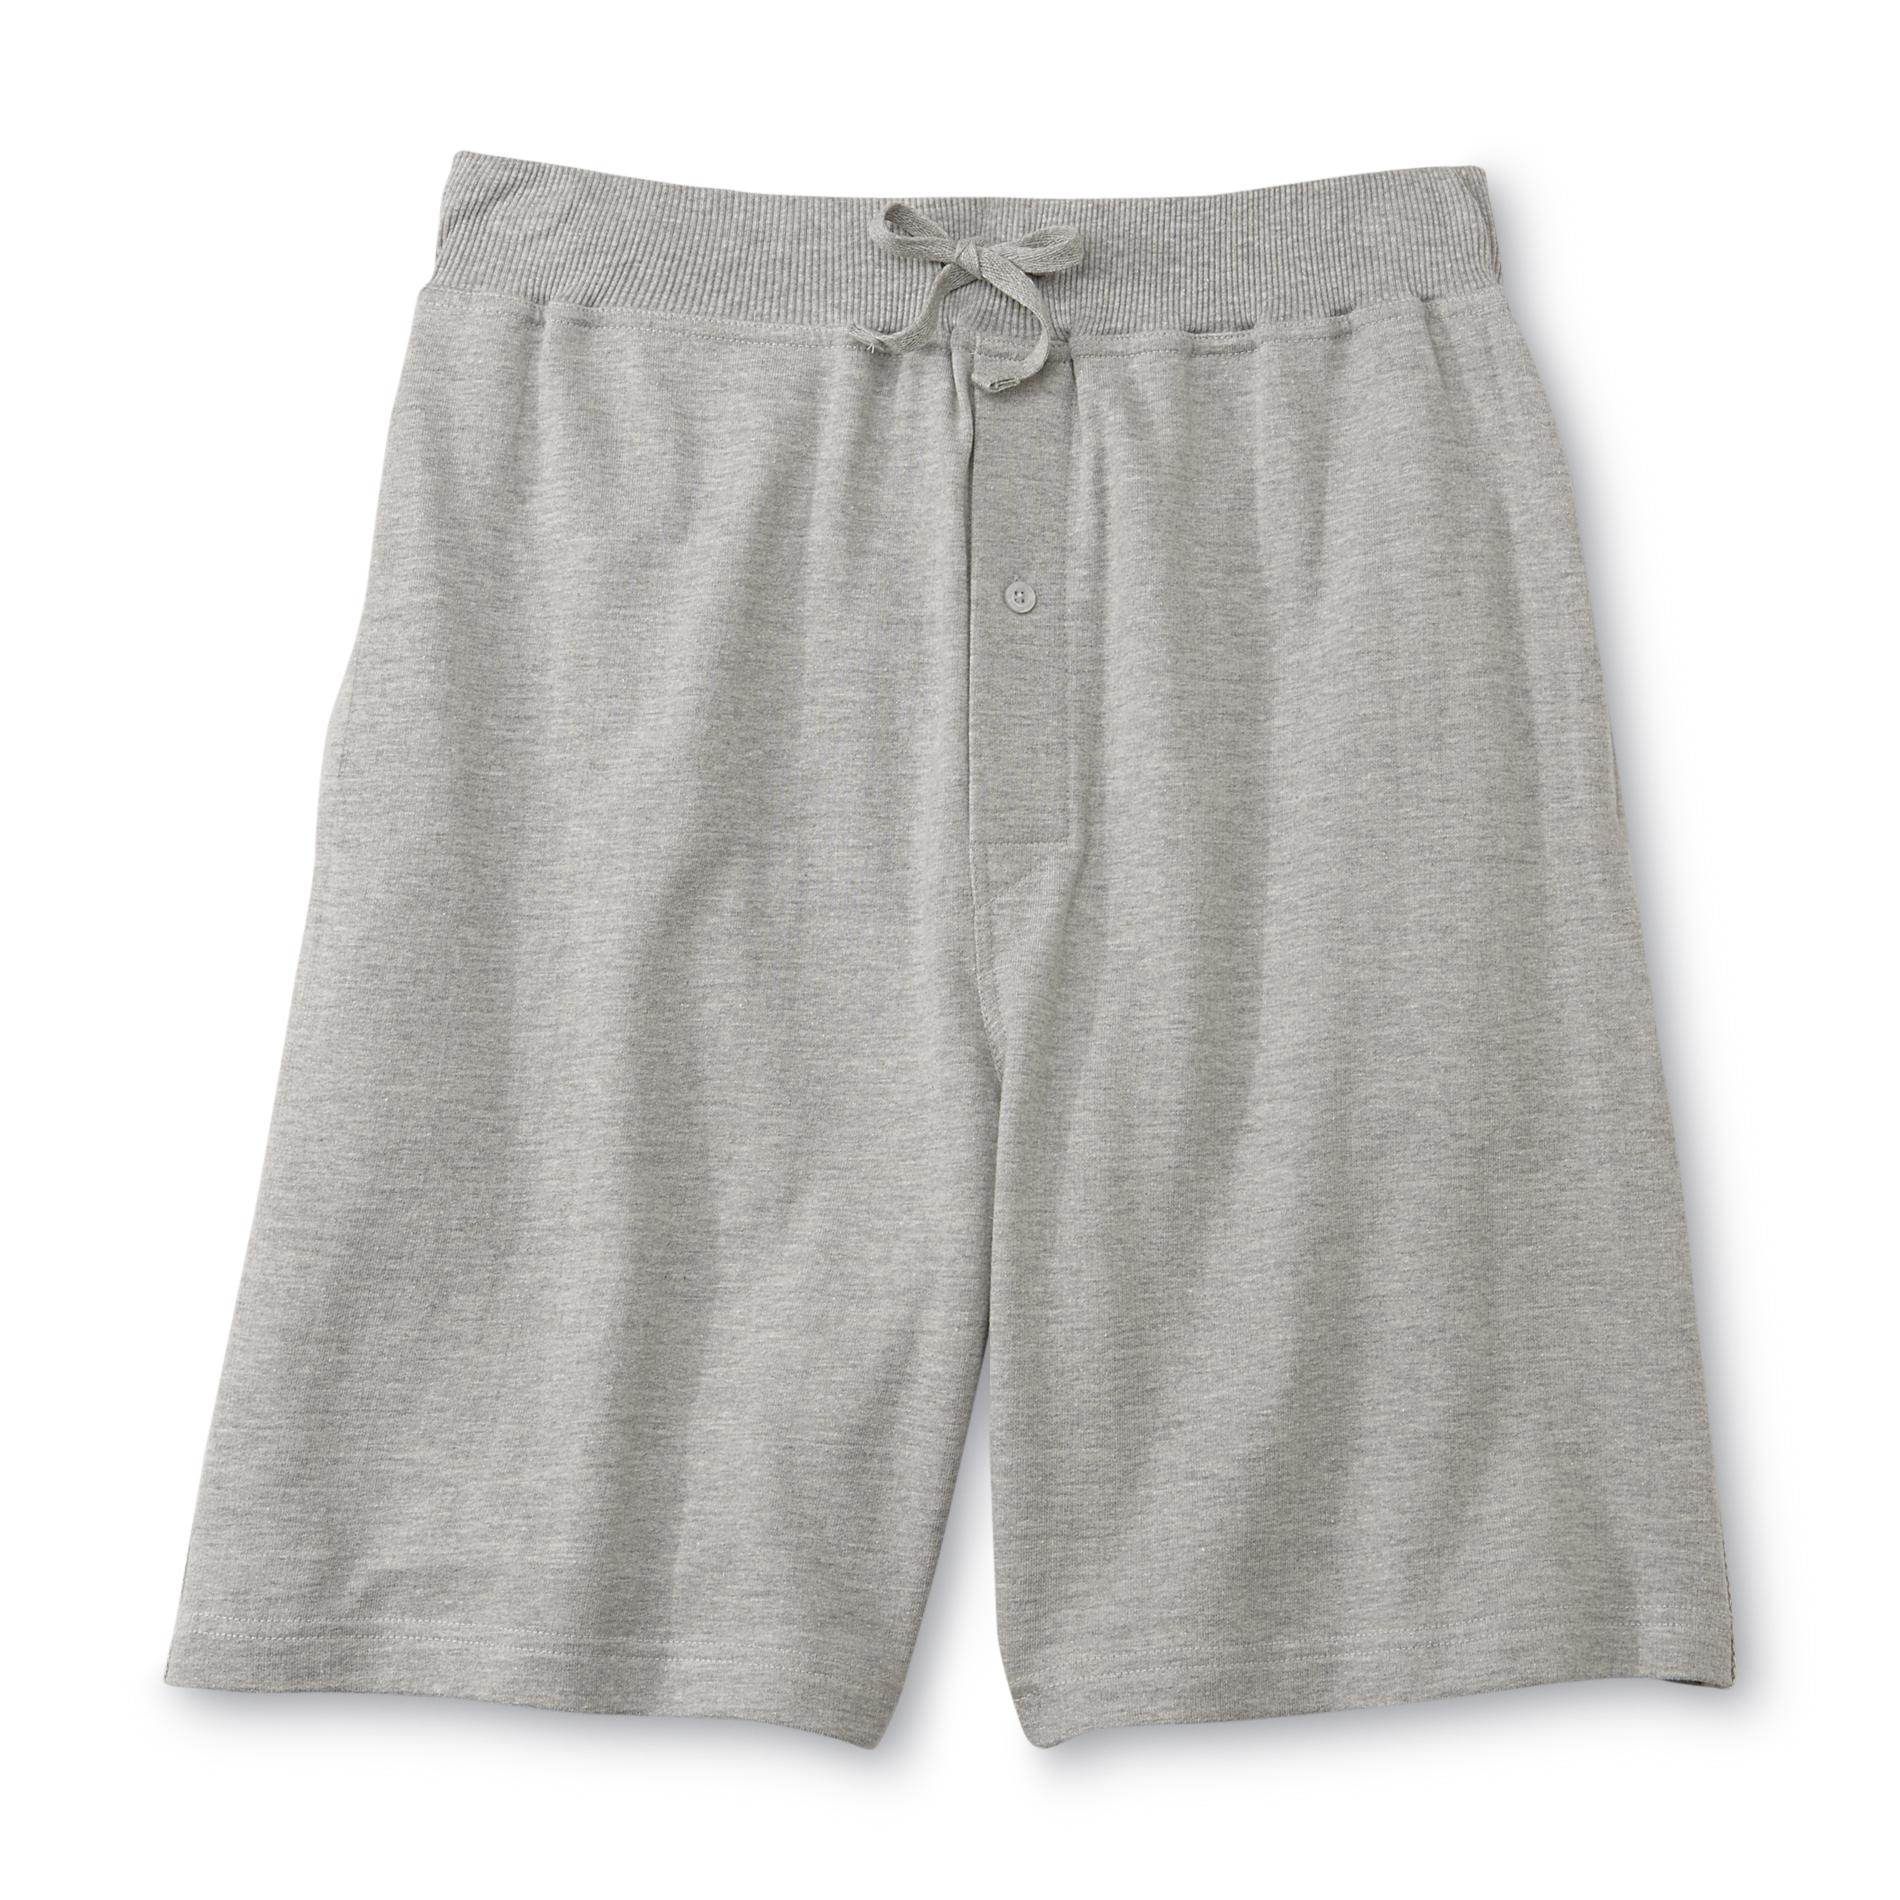 Joe Boxer Men's Knit Jam Shorts